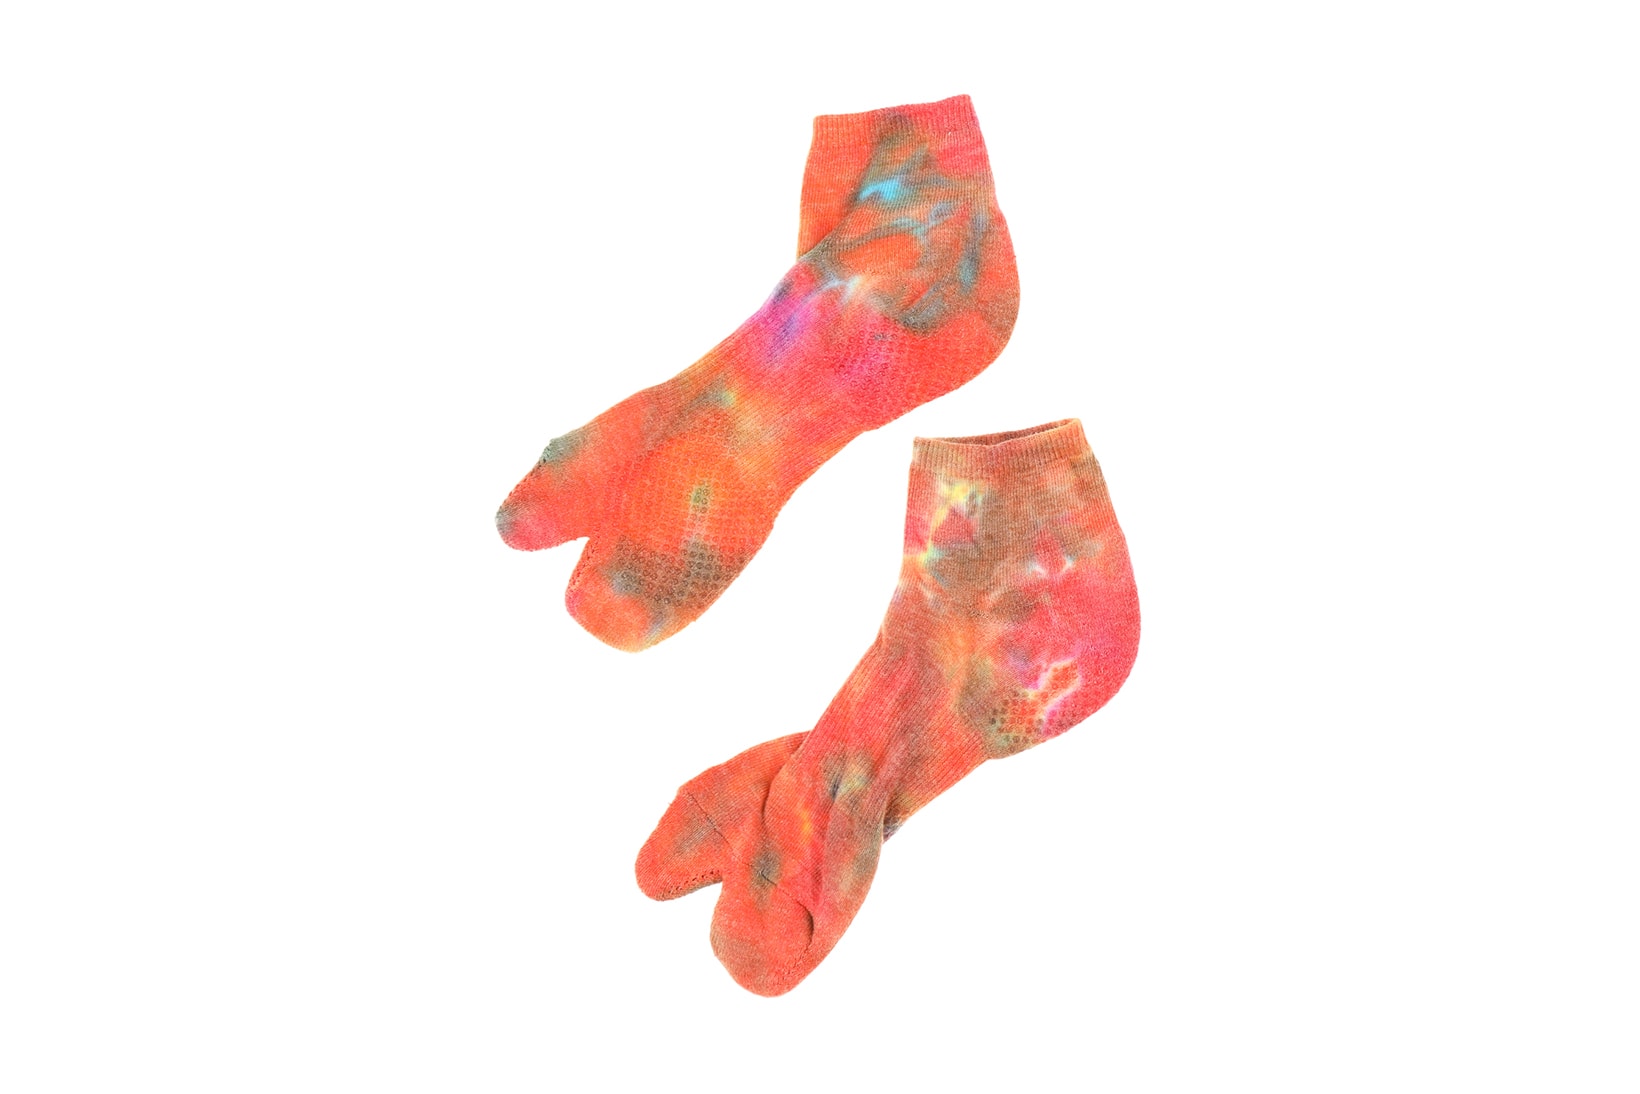 NEEDLES Geta Sandals tabi Socks spring summer 2018 june release date info drop shoes footwear tie dye japanese